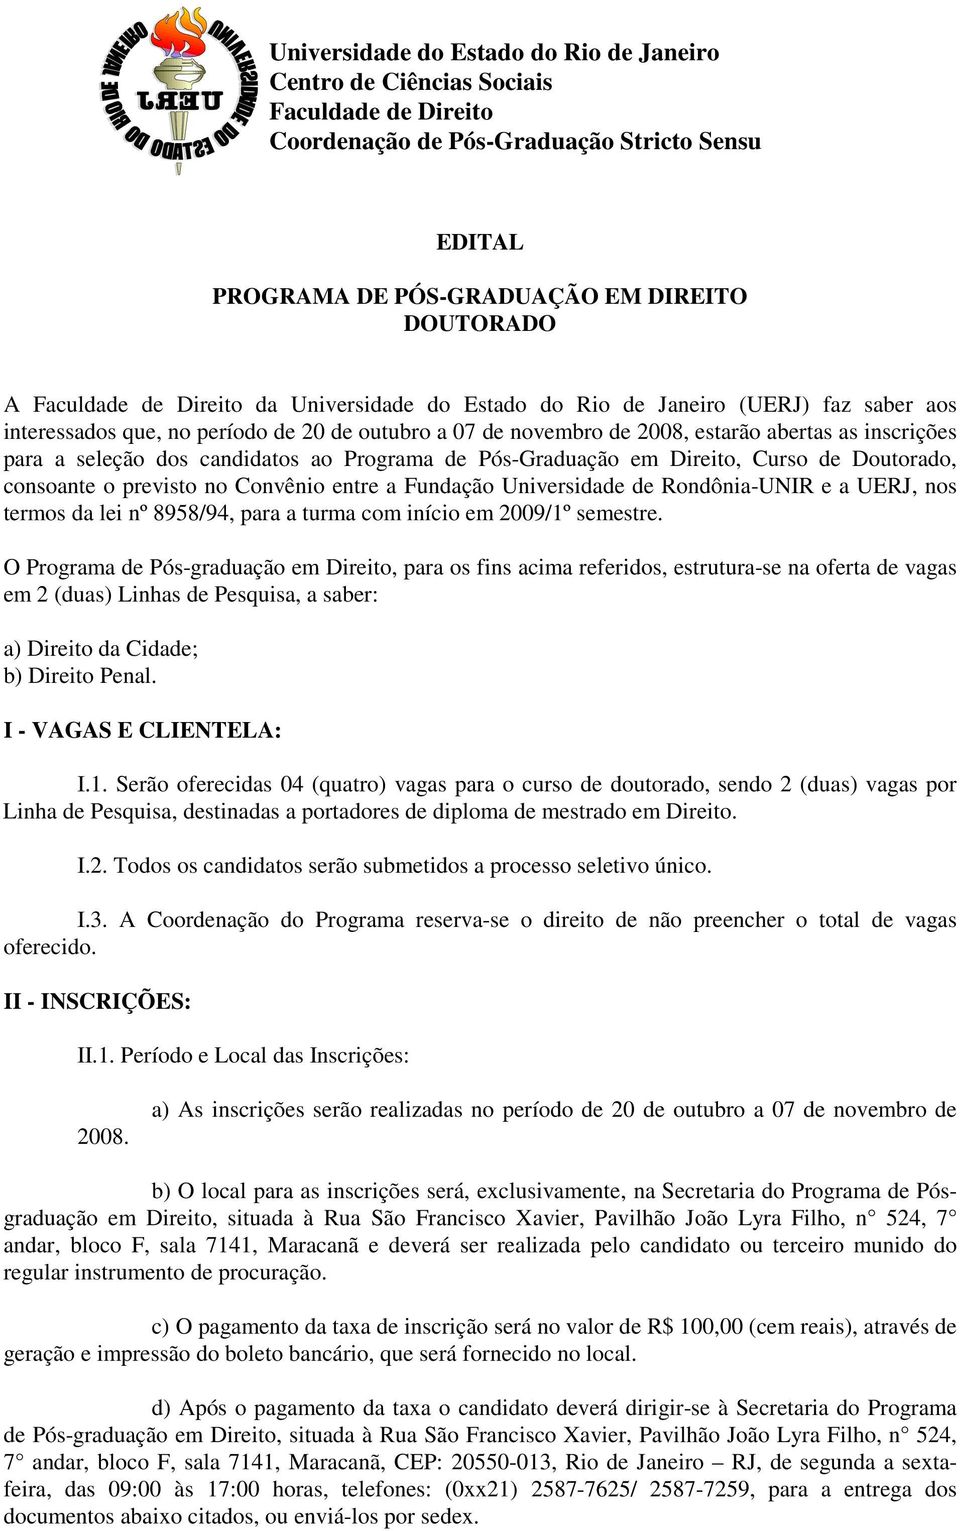 candidatos ao Programa de Pós-Graduação em Direito, Curso de Doutorado, consoante o previsto no Convênio entre a Fundação Universidade de Rondônia-UNIR e a UERJ, nos termos da lei nº 8958/94, para a